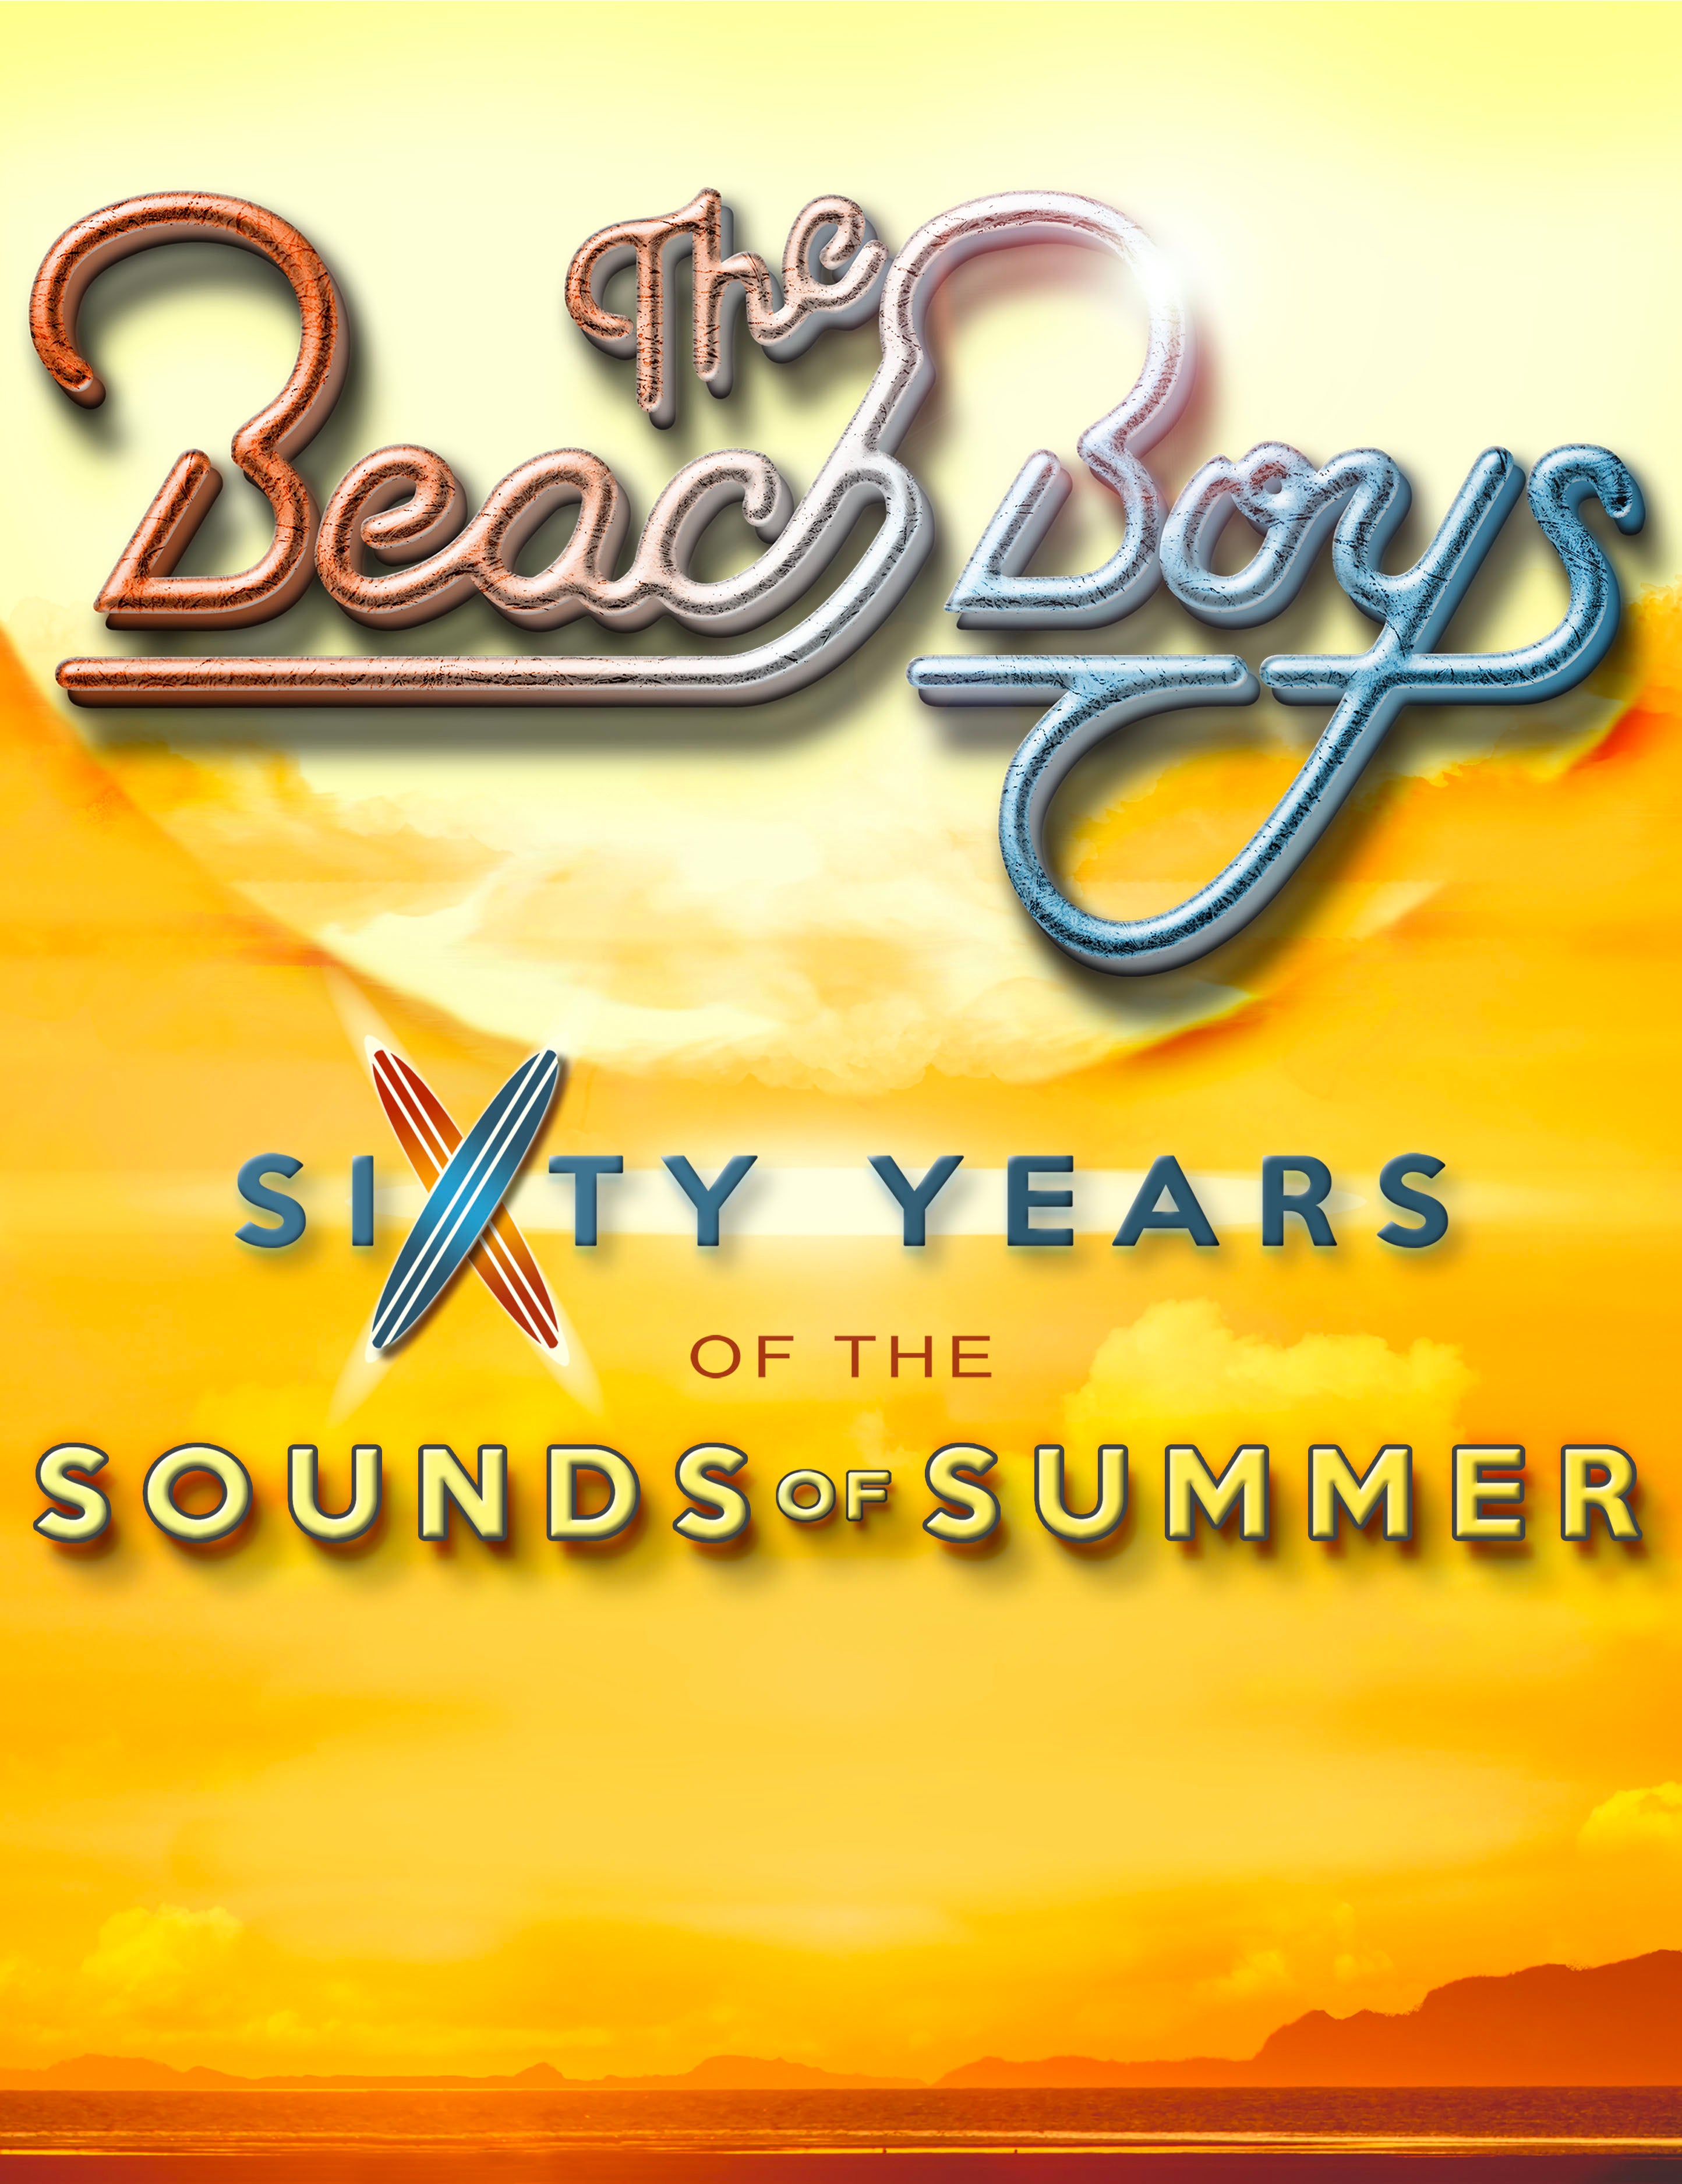 Beach Boys Sounds of Summer